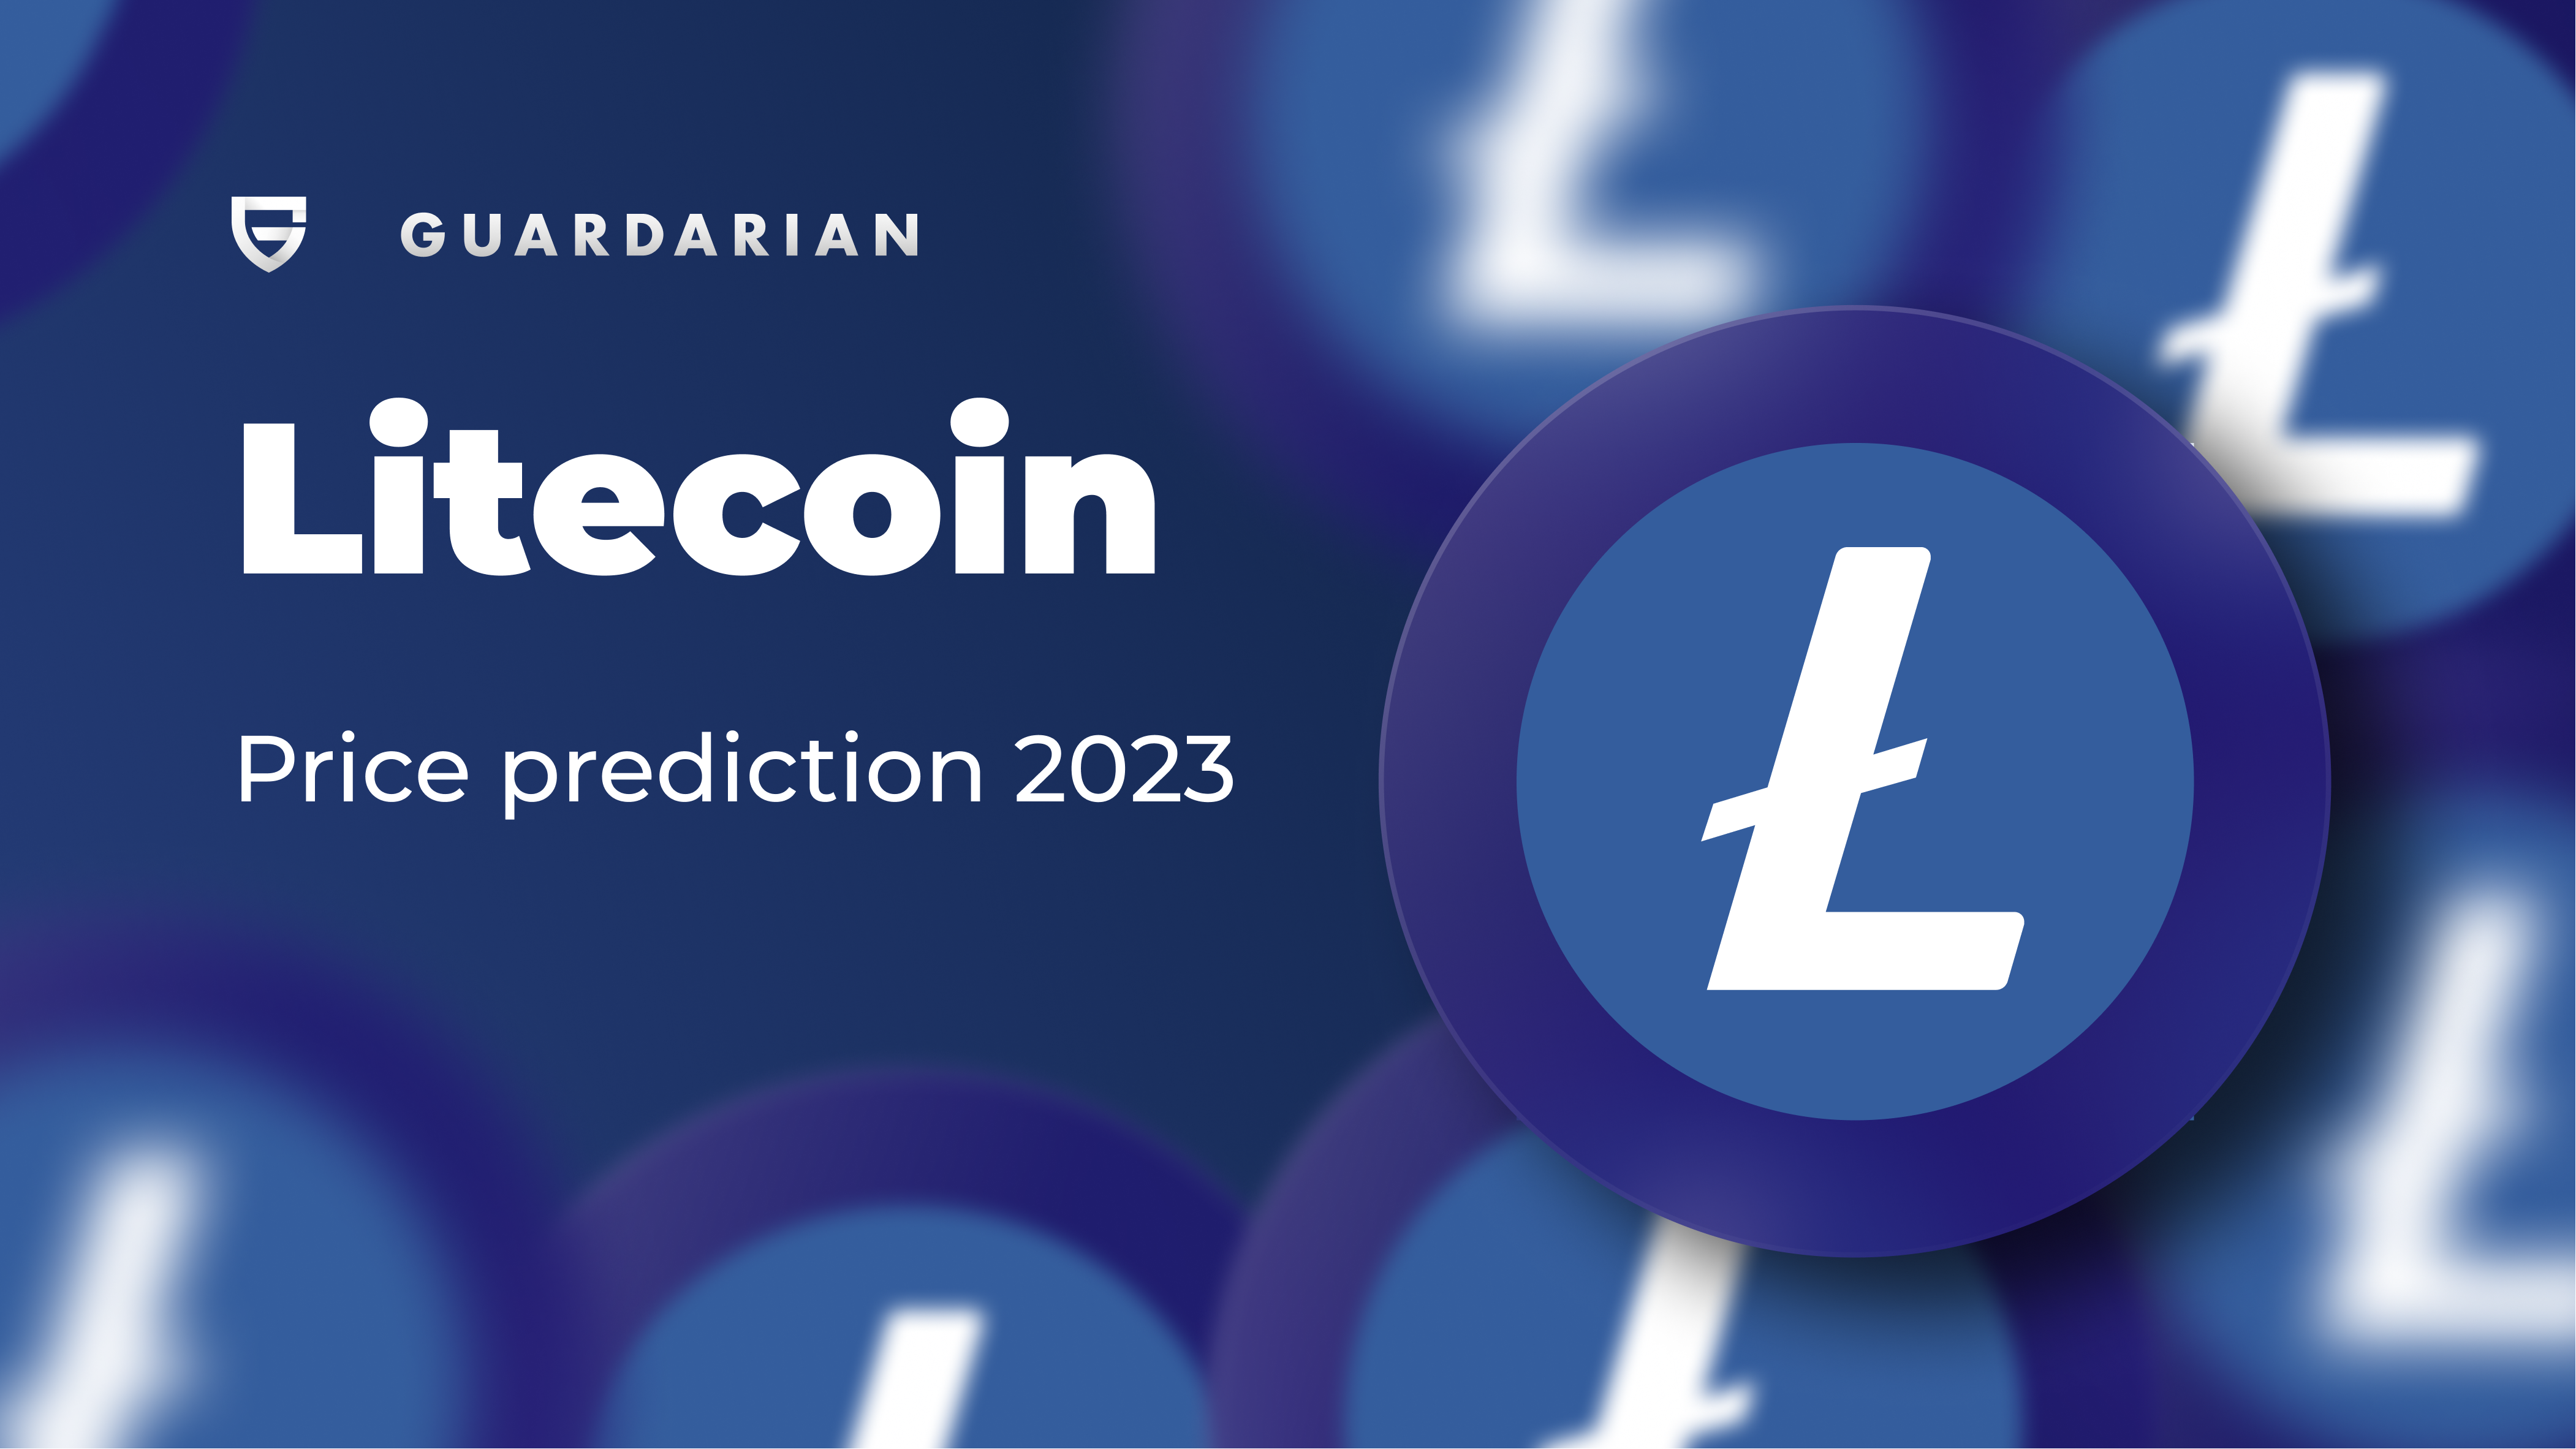 Litecoin Price Prediction 2023 - Guardarian blog